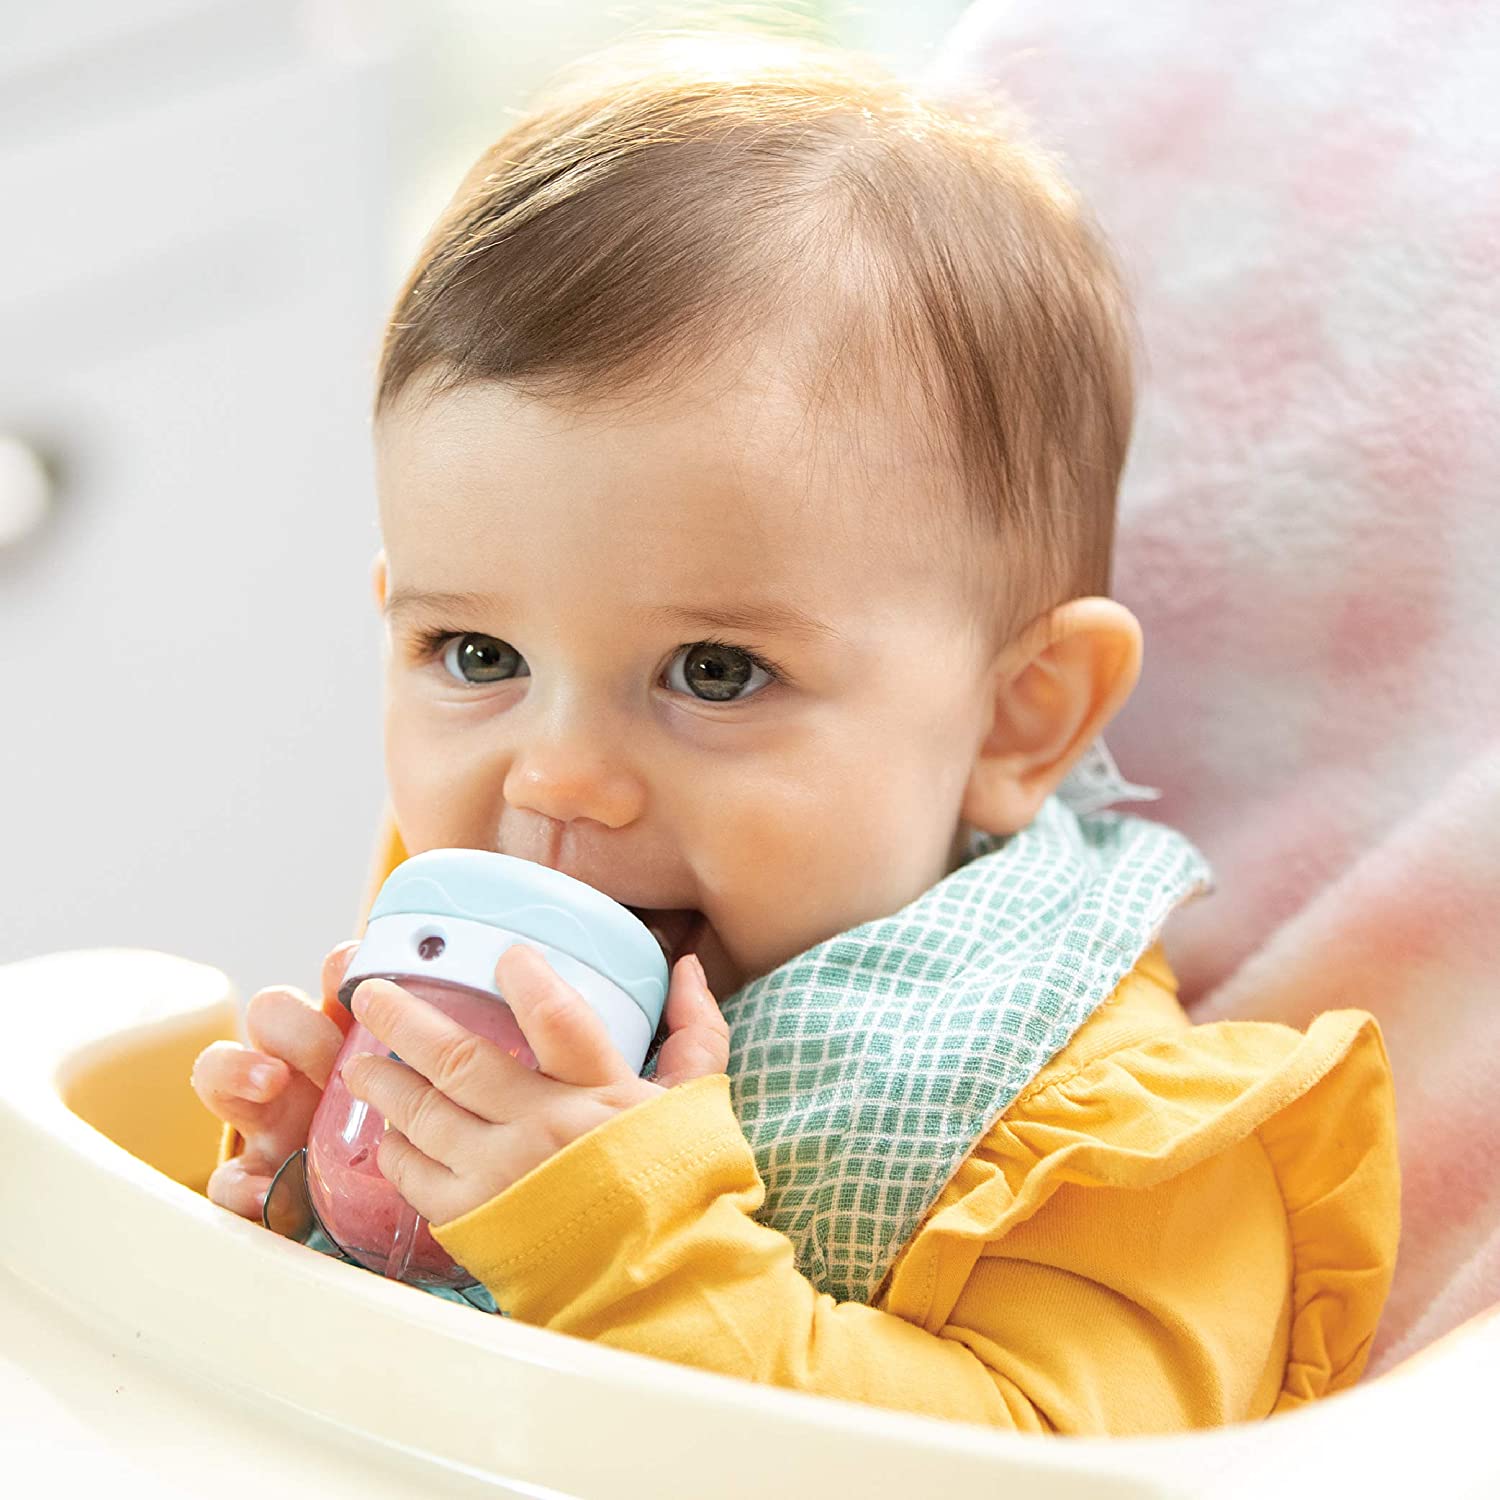 Nutribullet Baby Food Blender, 200W, 400ml, White/Turquoise